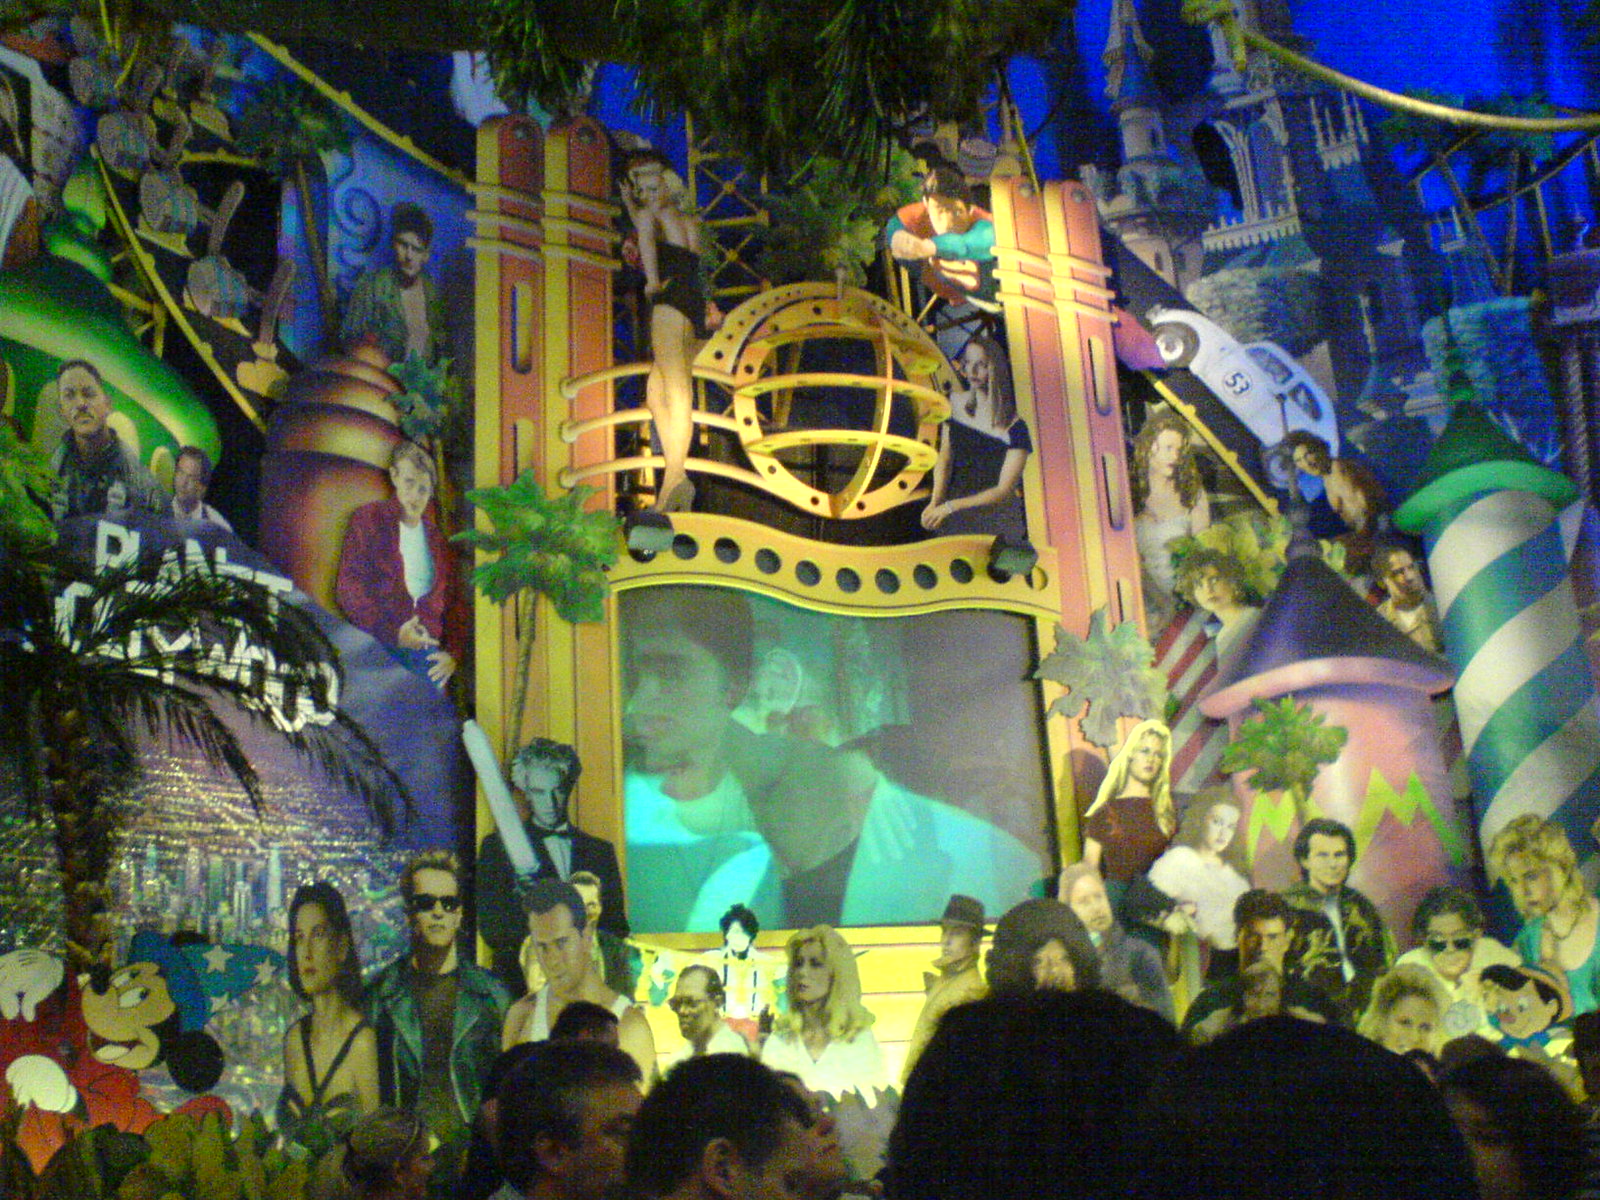 Video wall at Planet Hollywood Paris